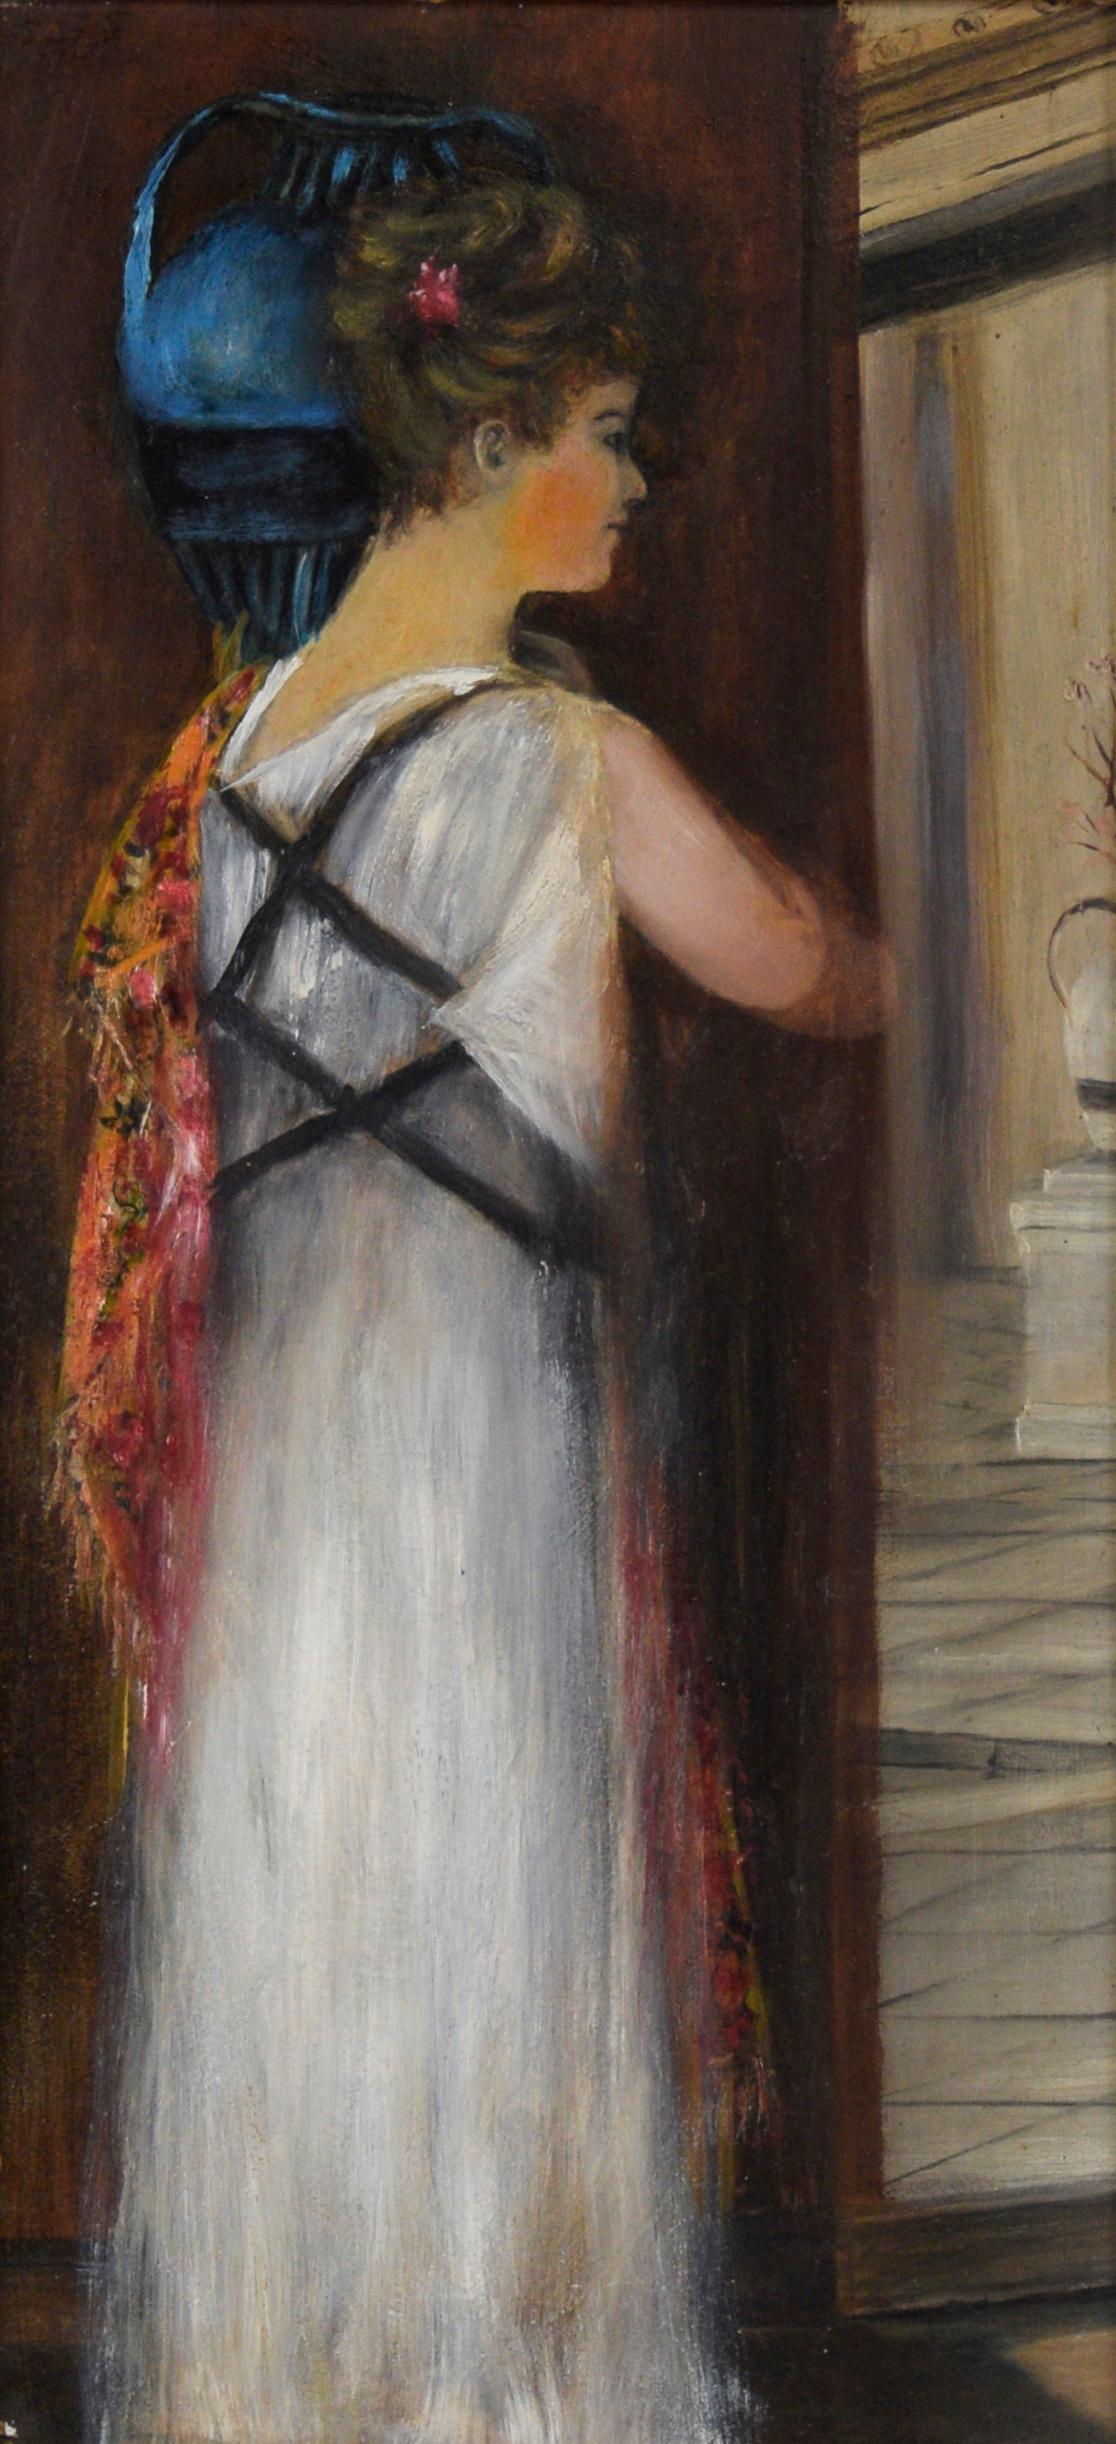 Femme athénienne transportant une jarre d'eau dans une robe blanche
Magnifique peinture d'un artiste de Californie centrale datant des années 1890 (19e siècle américain). Peinture à l'huile représentant une femme Whiting tenant un vase d'eau bleu